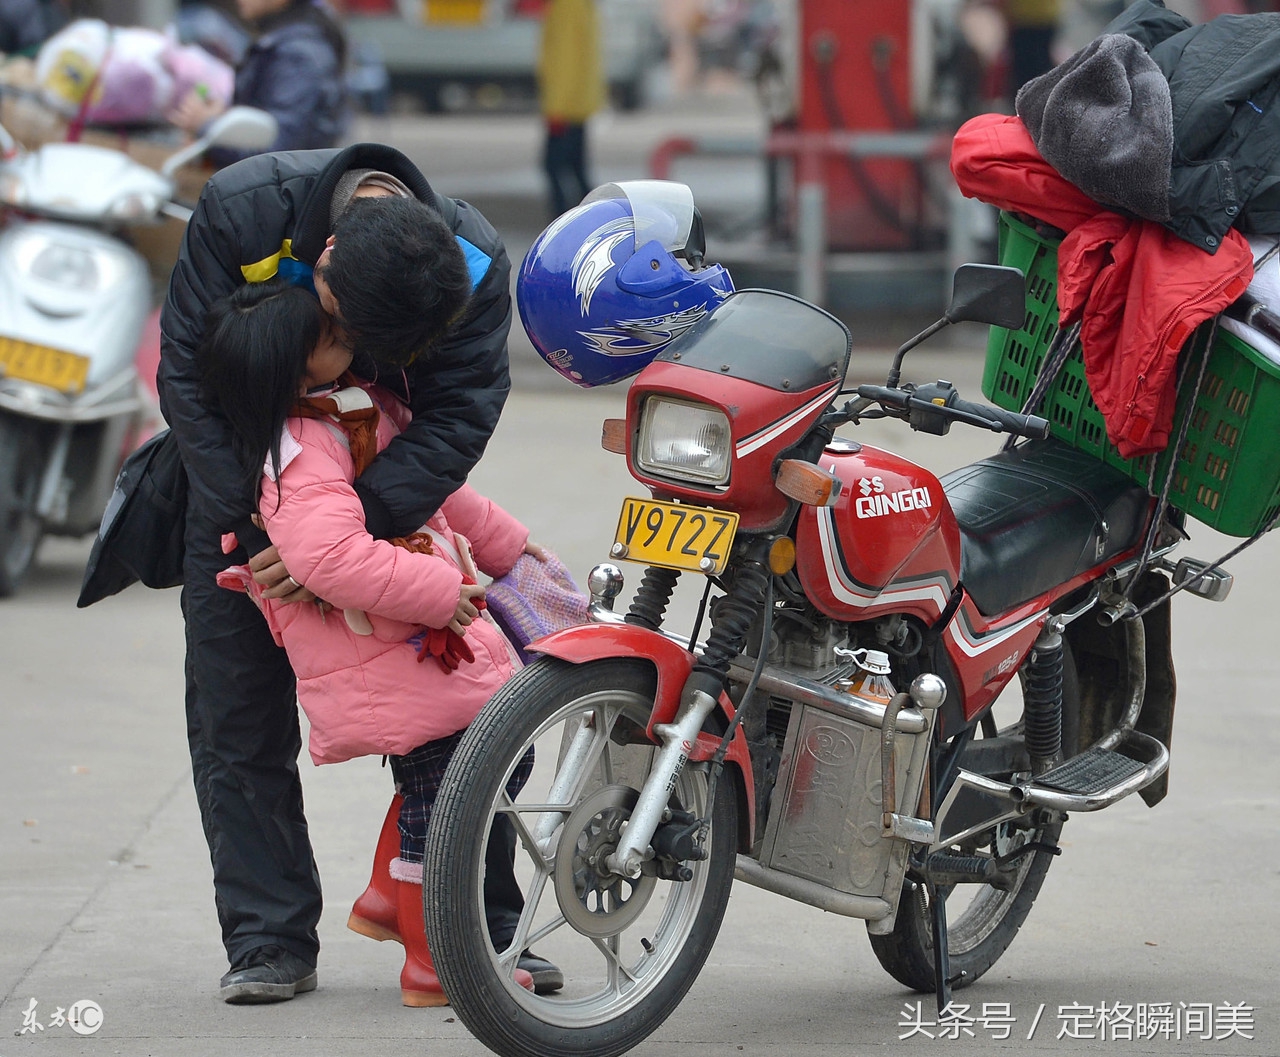 农民工回家团聚 寒冷天骑摩托车带着家人 孩子被冻的瑟瑟发抖